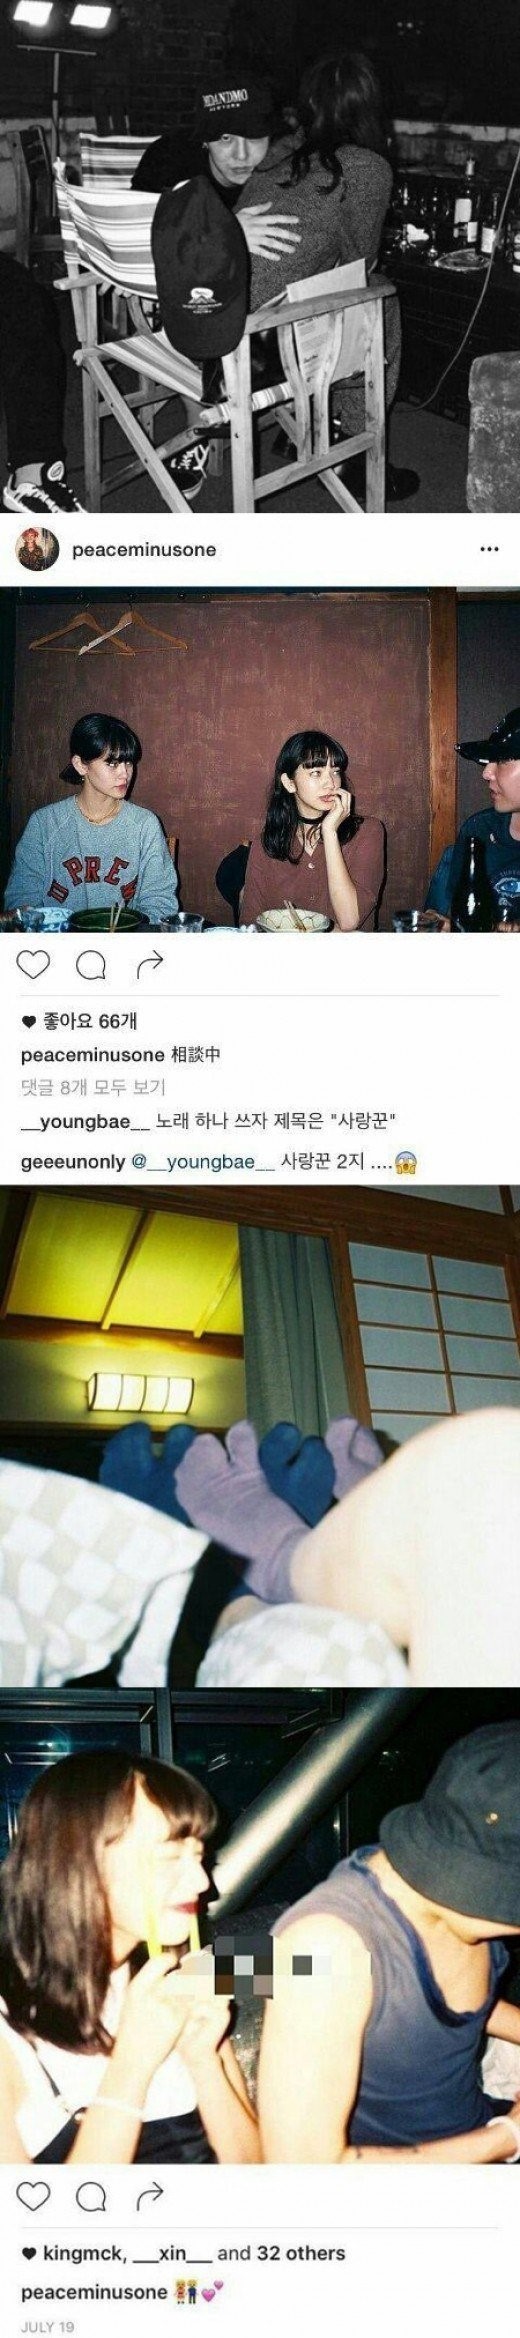 Trưởng nhóm Big Bang, G-Dragon bị phát tán ảnh bí mật với mẫu Nhật